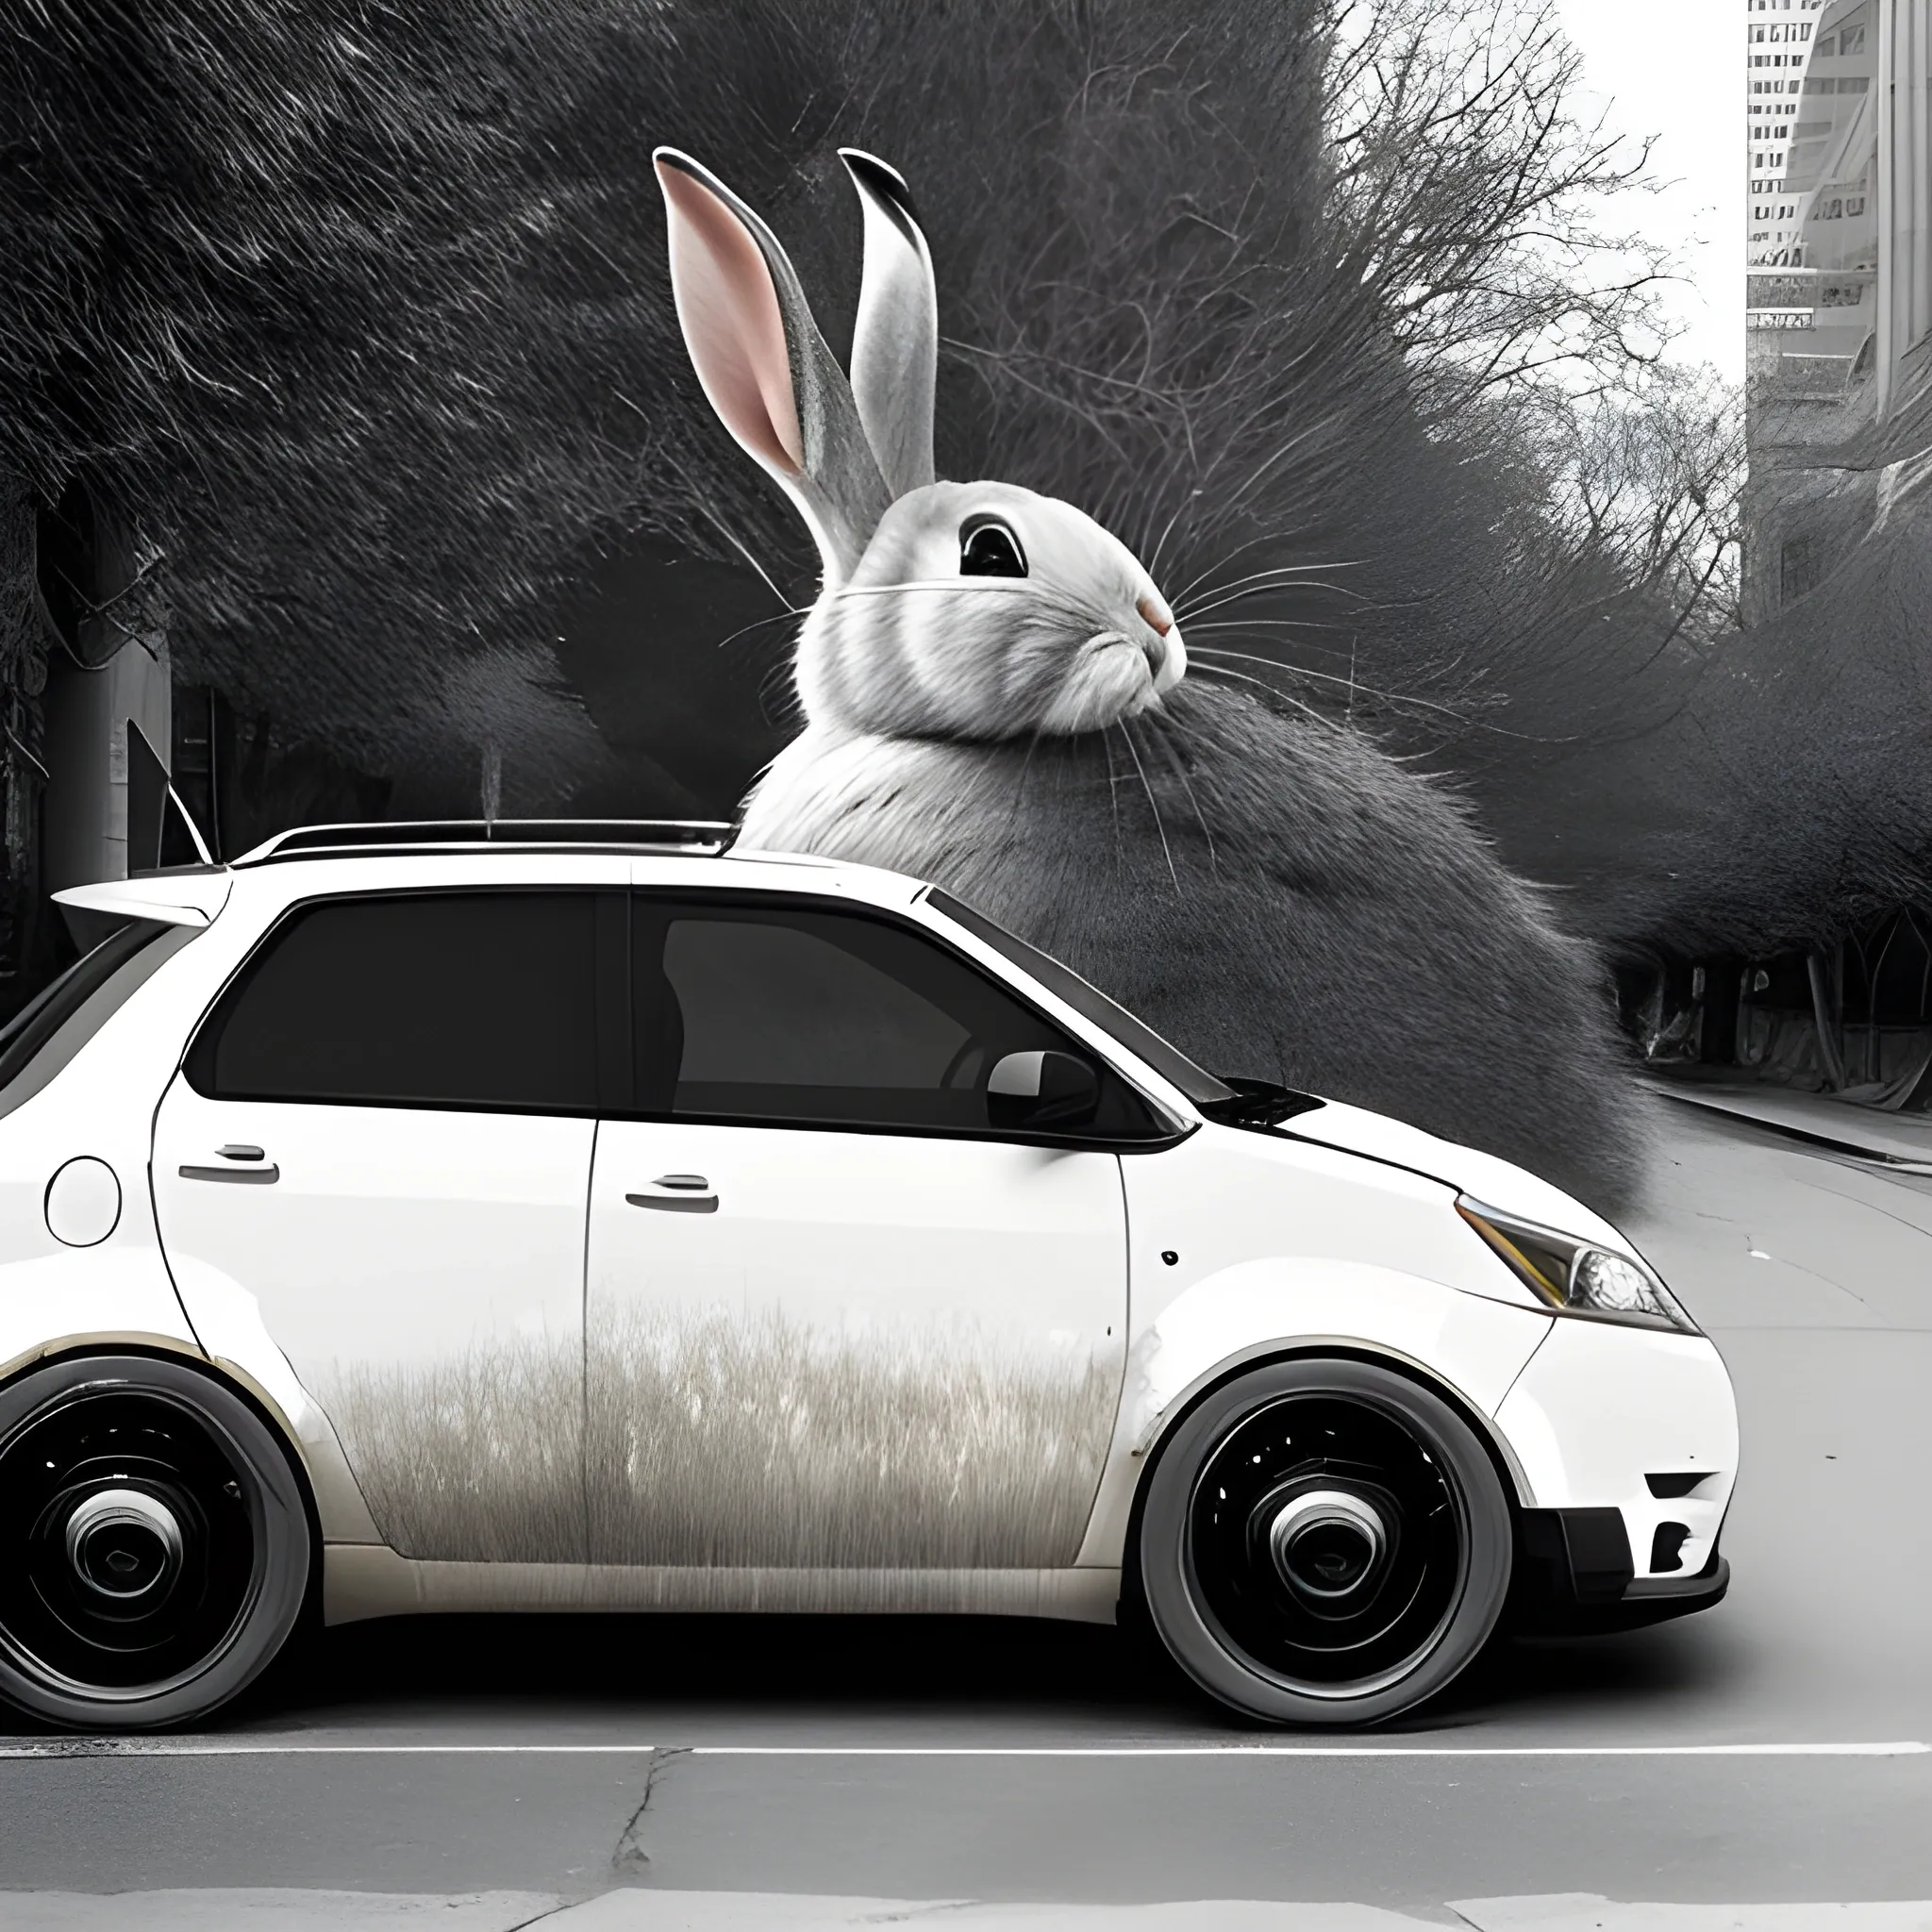 a giant rabbit eats a car, photography